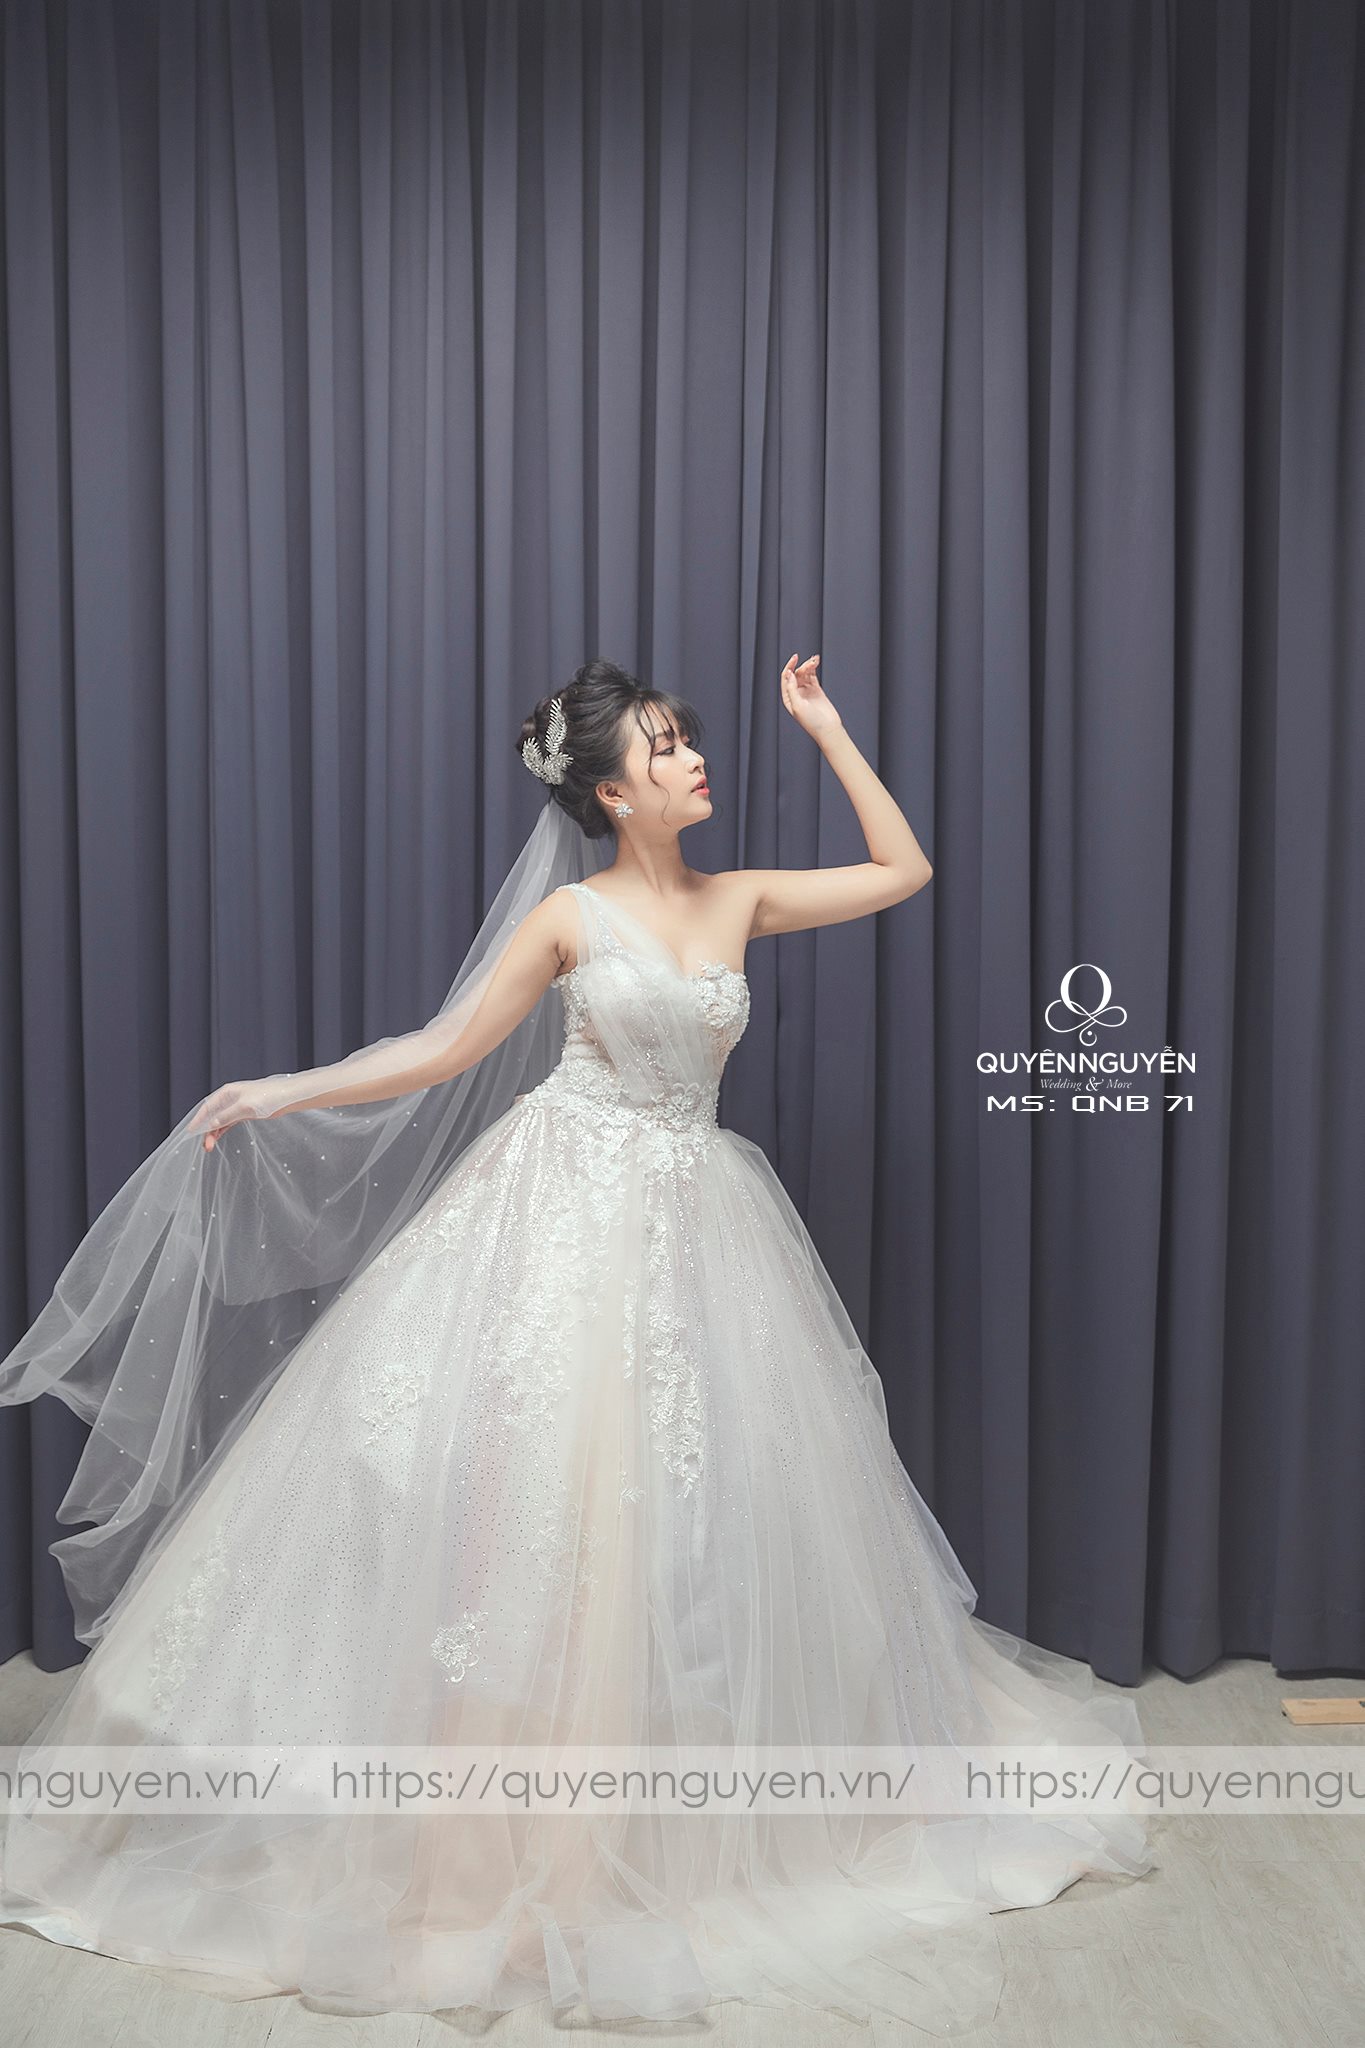 Xuýt xoa trước loạt váy cưới công chúa của dàn mỹ nhân Việt